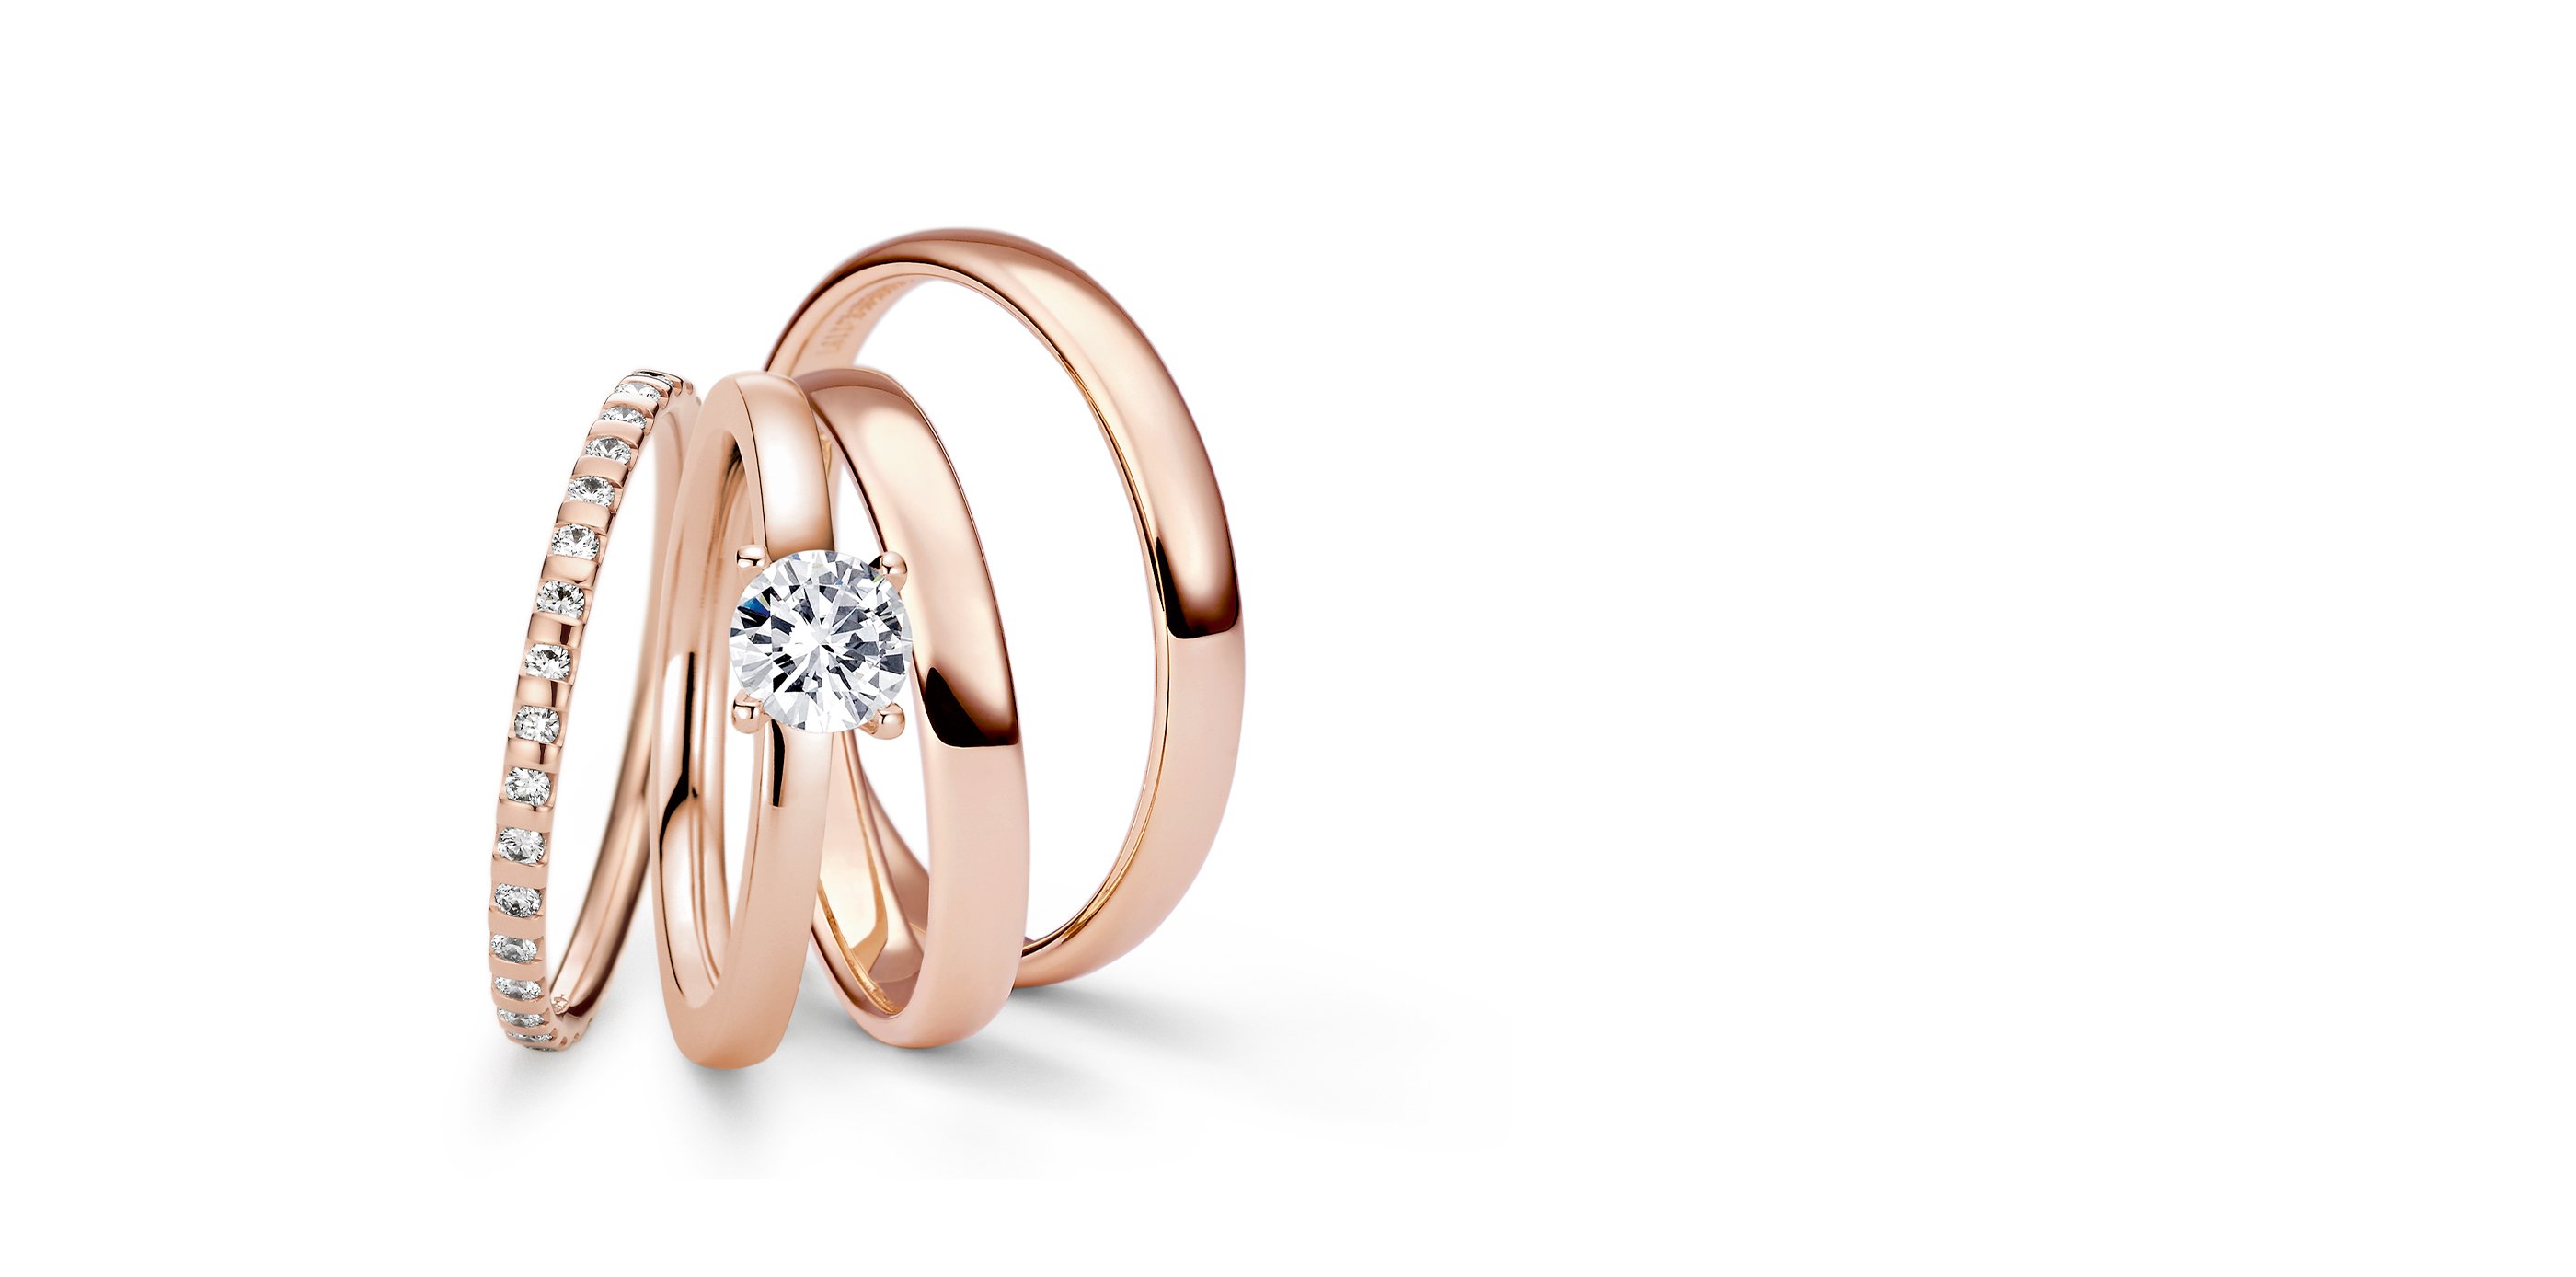 Niessing – Wedding Rings, Tension Rings, Engagement Rings